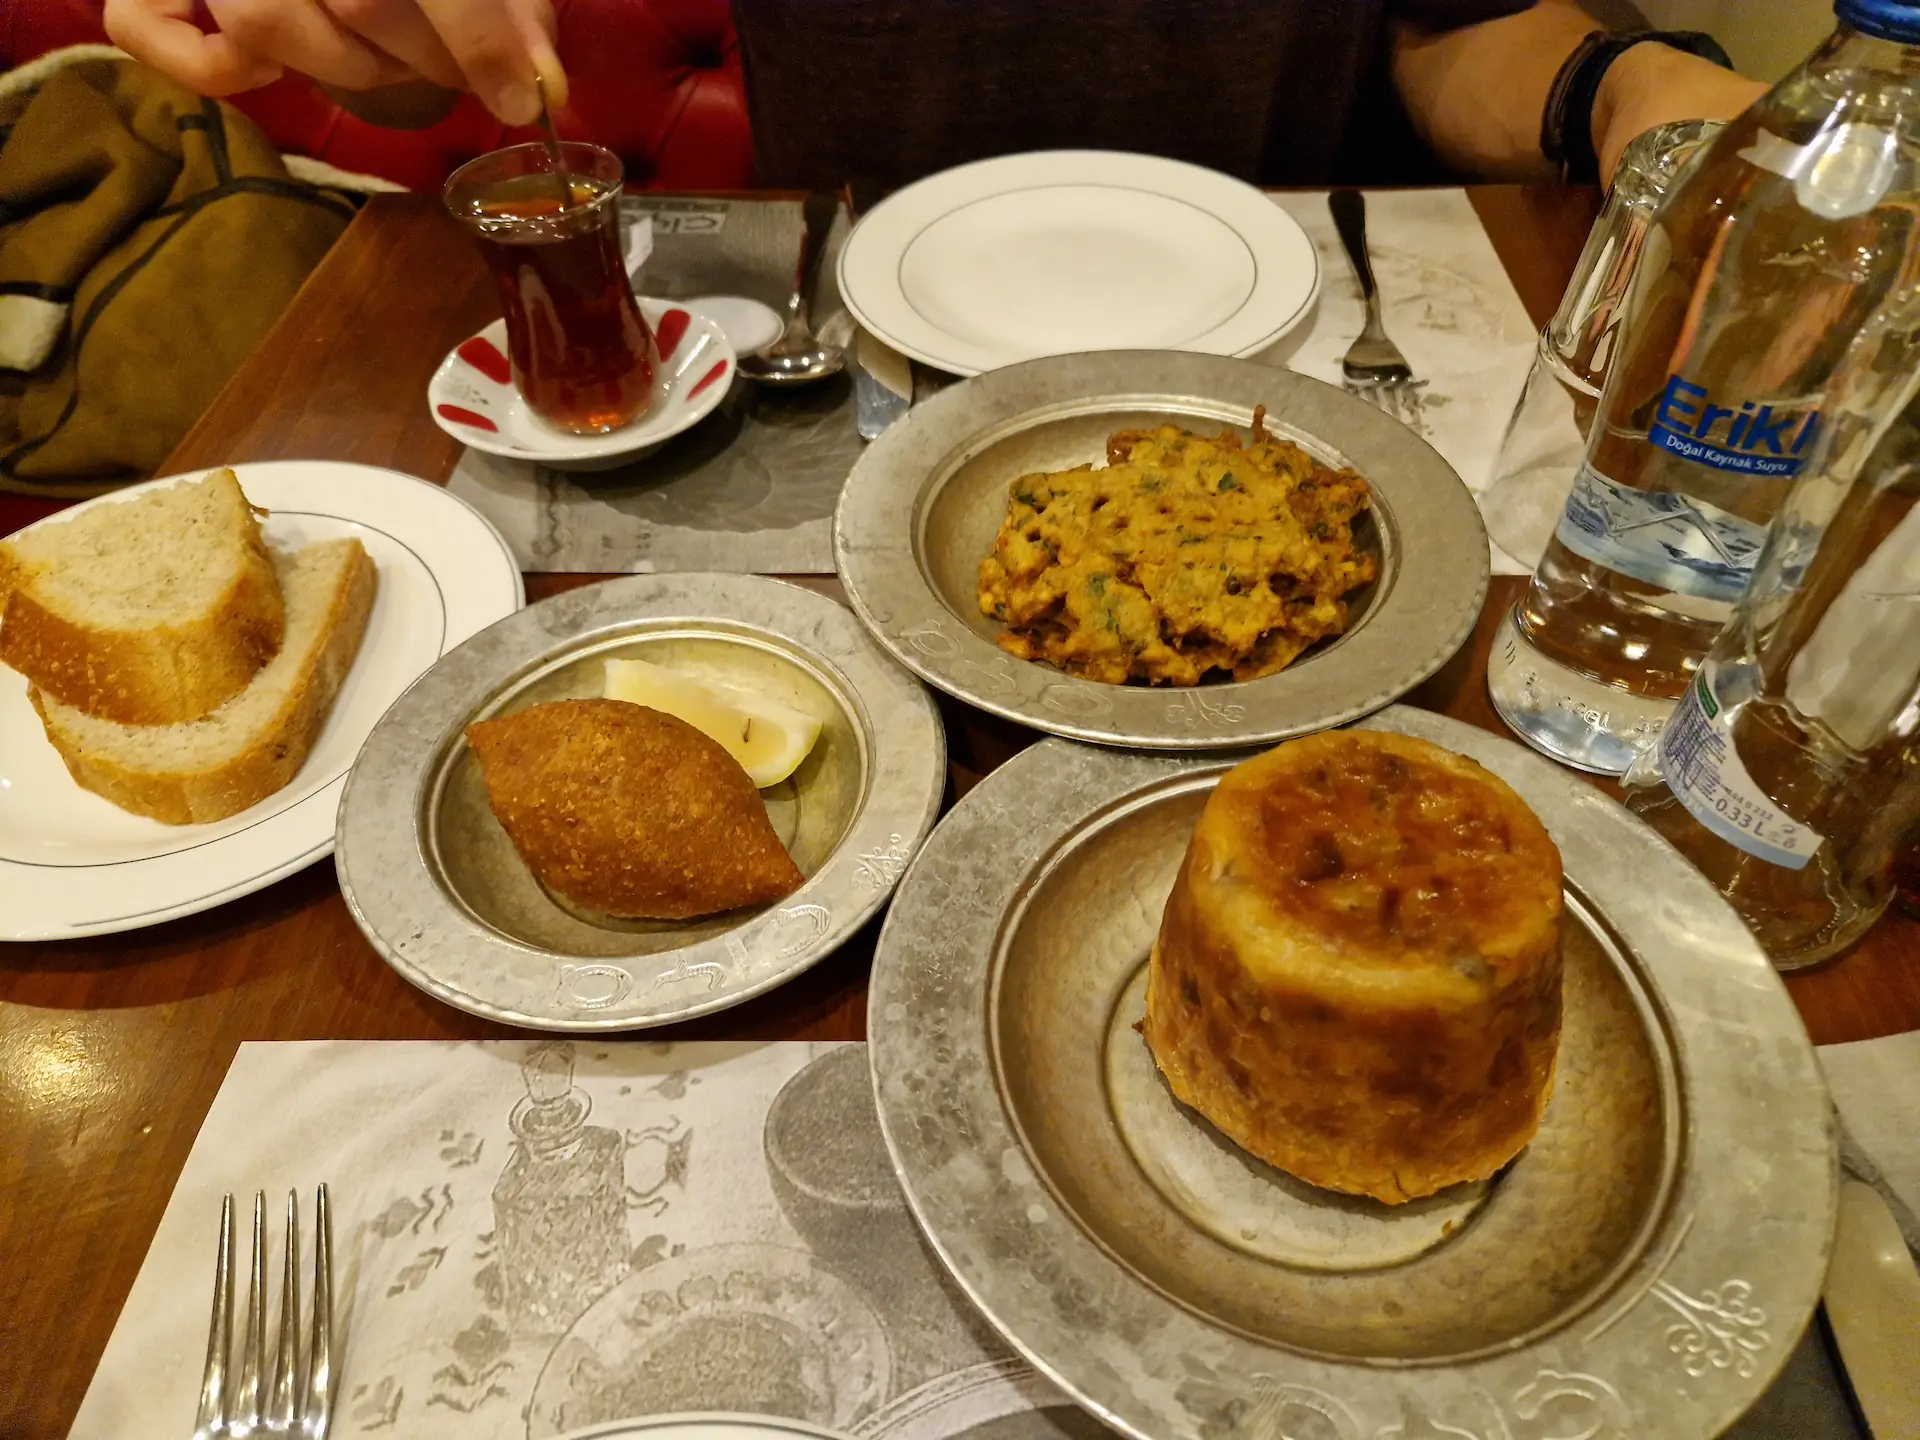 Dans des petits plats en métal, on voit quelques petits plats : perde pilavı, içli köfte et galettes de légumes.